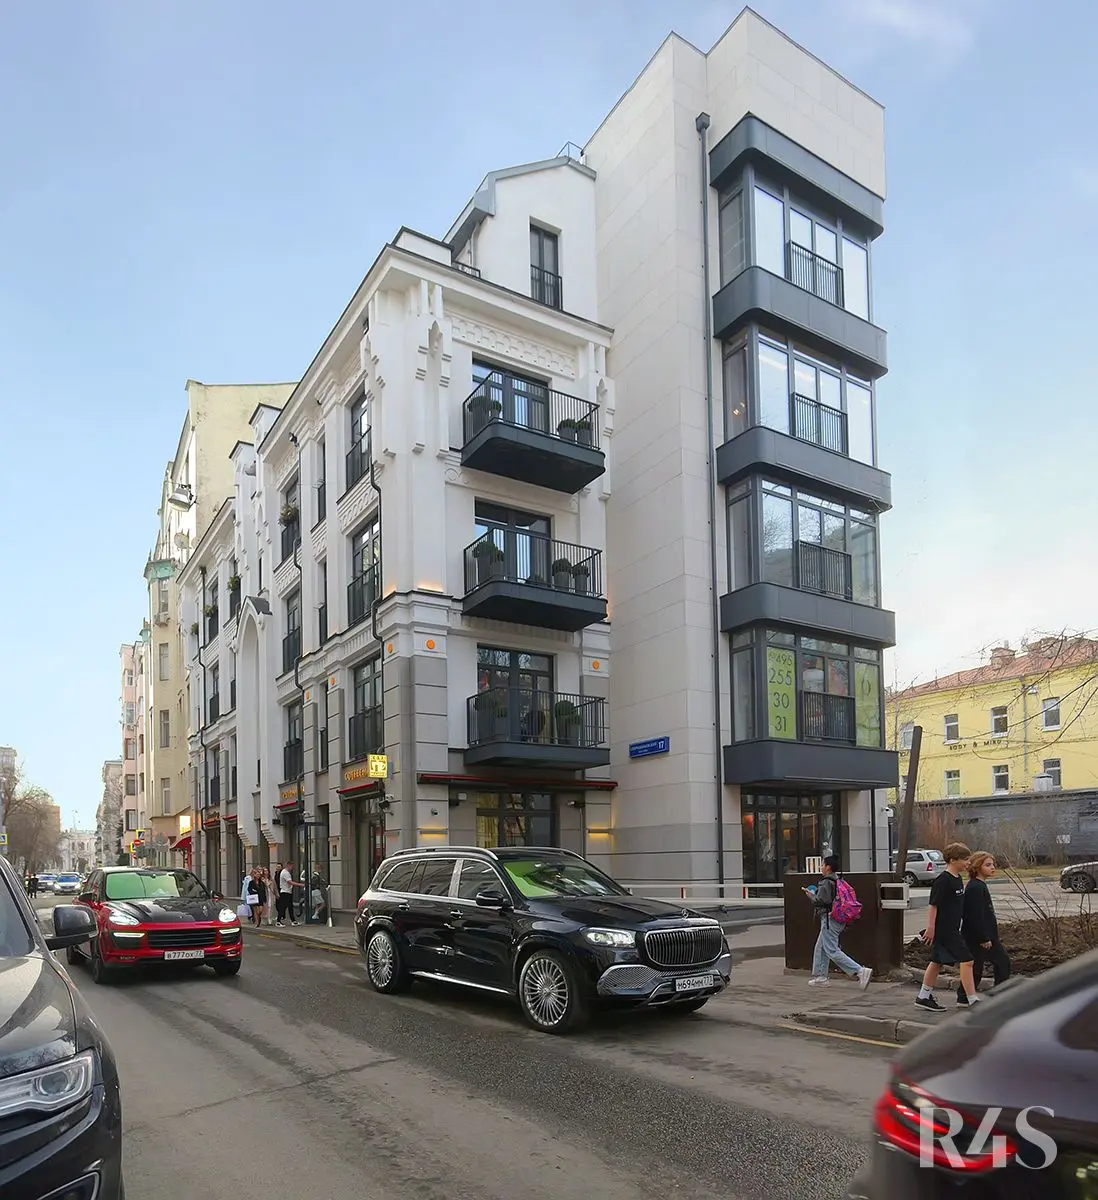 Продажа готового арендного бизнеса площадью 189.9 м2 в Москве: Спиридоньевский переулок, 17 R4S | Realty4Sale